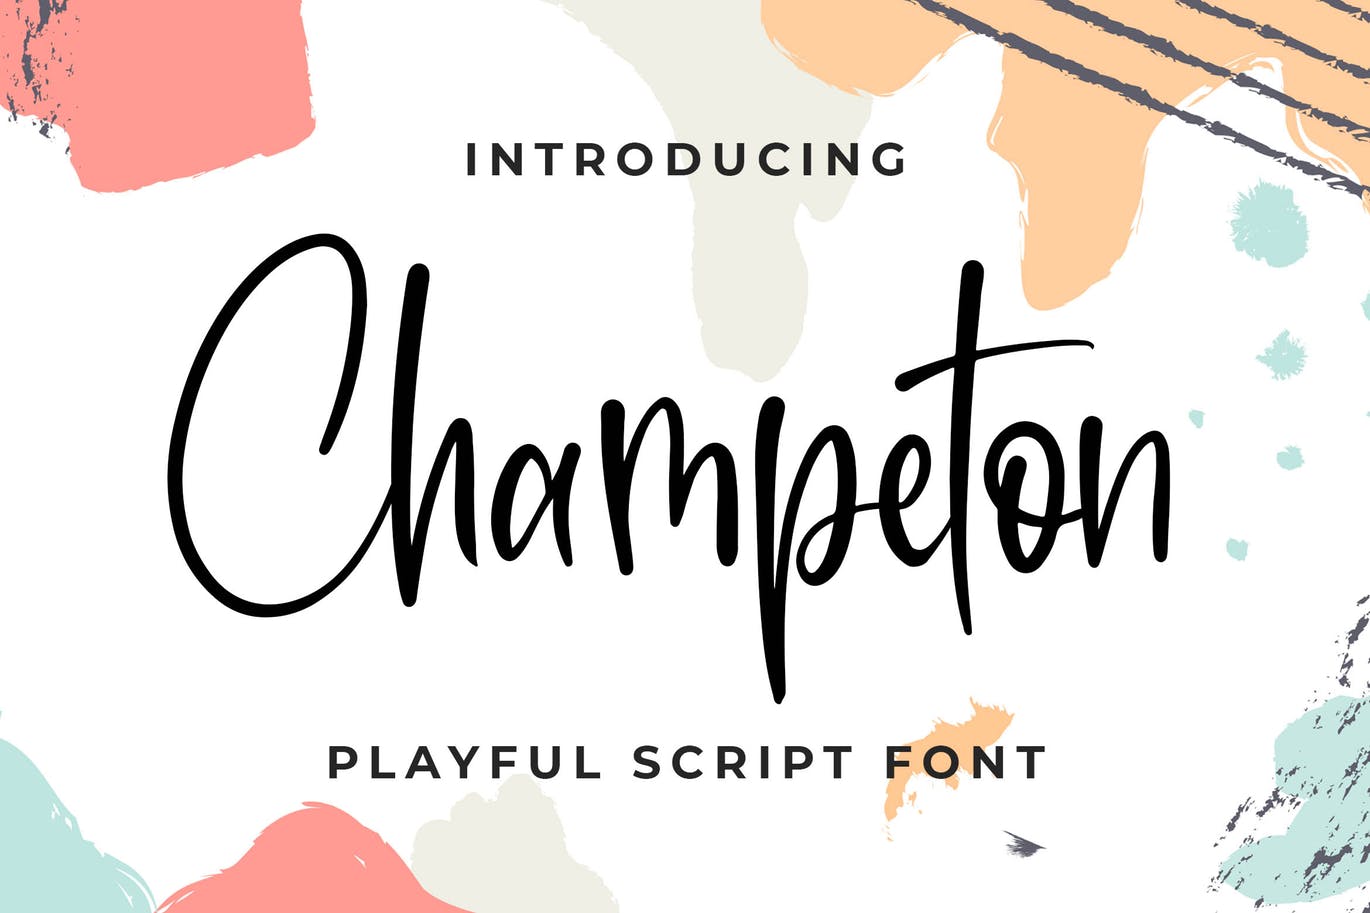 俏皮流畅风格英文书法字体大洋岛精选 Champeton – Playful Script Font插图